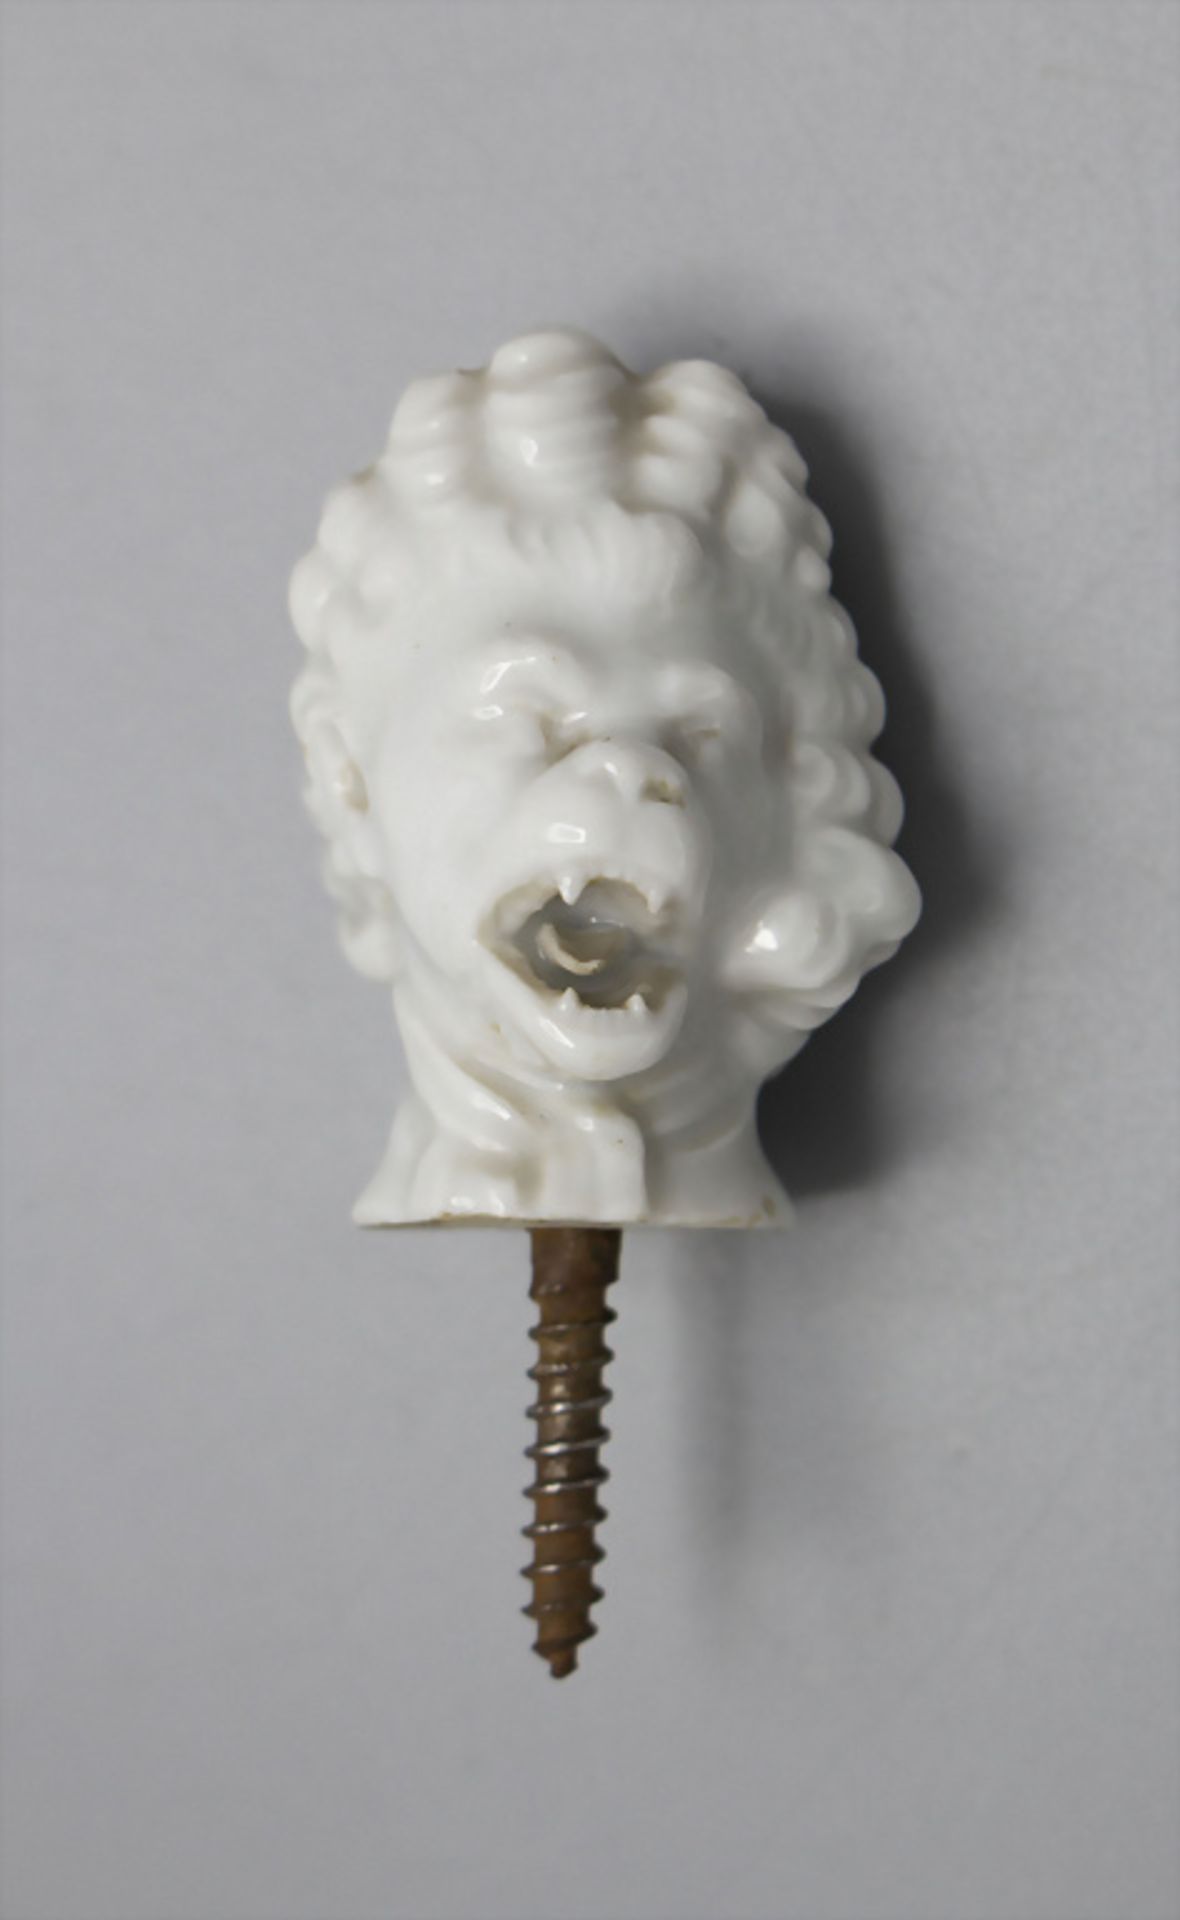 Affenkopf als Stockgriff / A monkey head as cane handle, Meissen, Pfeifferzeit, 1924-34